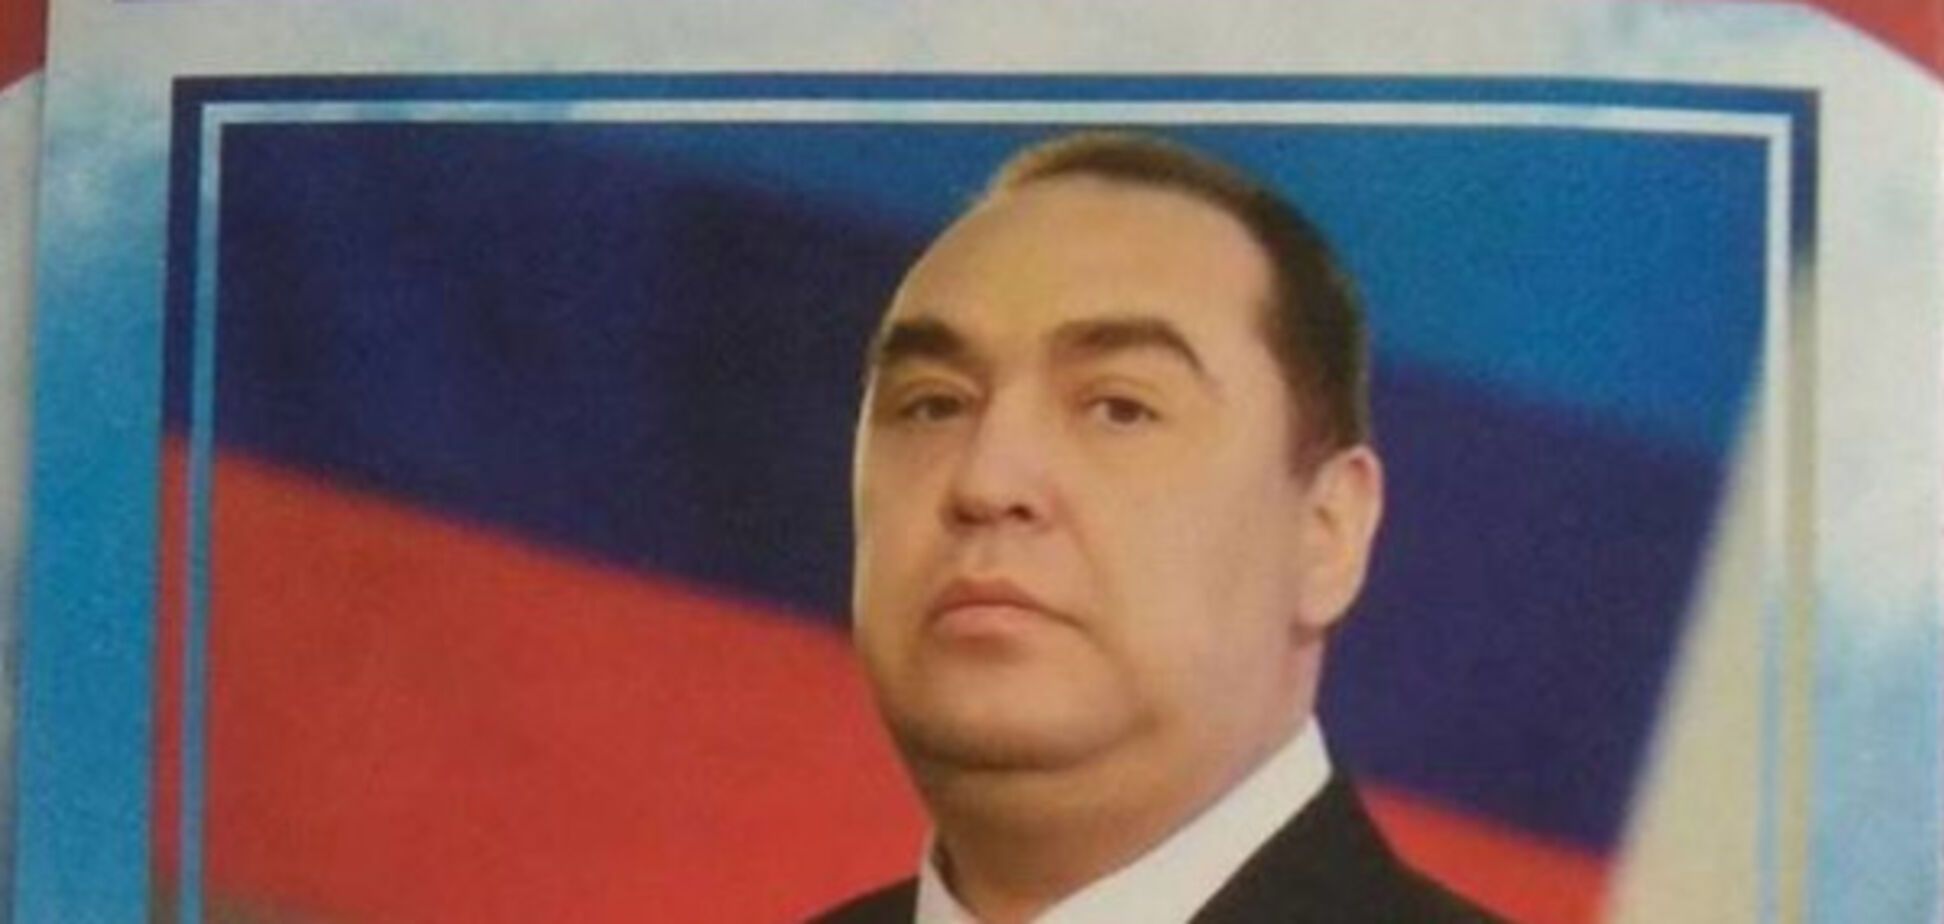 Игорь Плотницкий